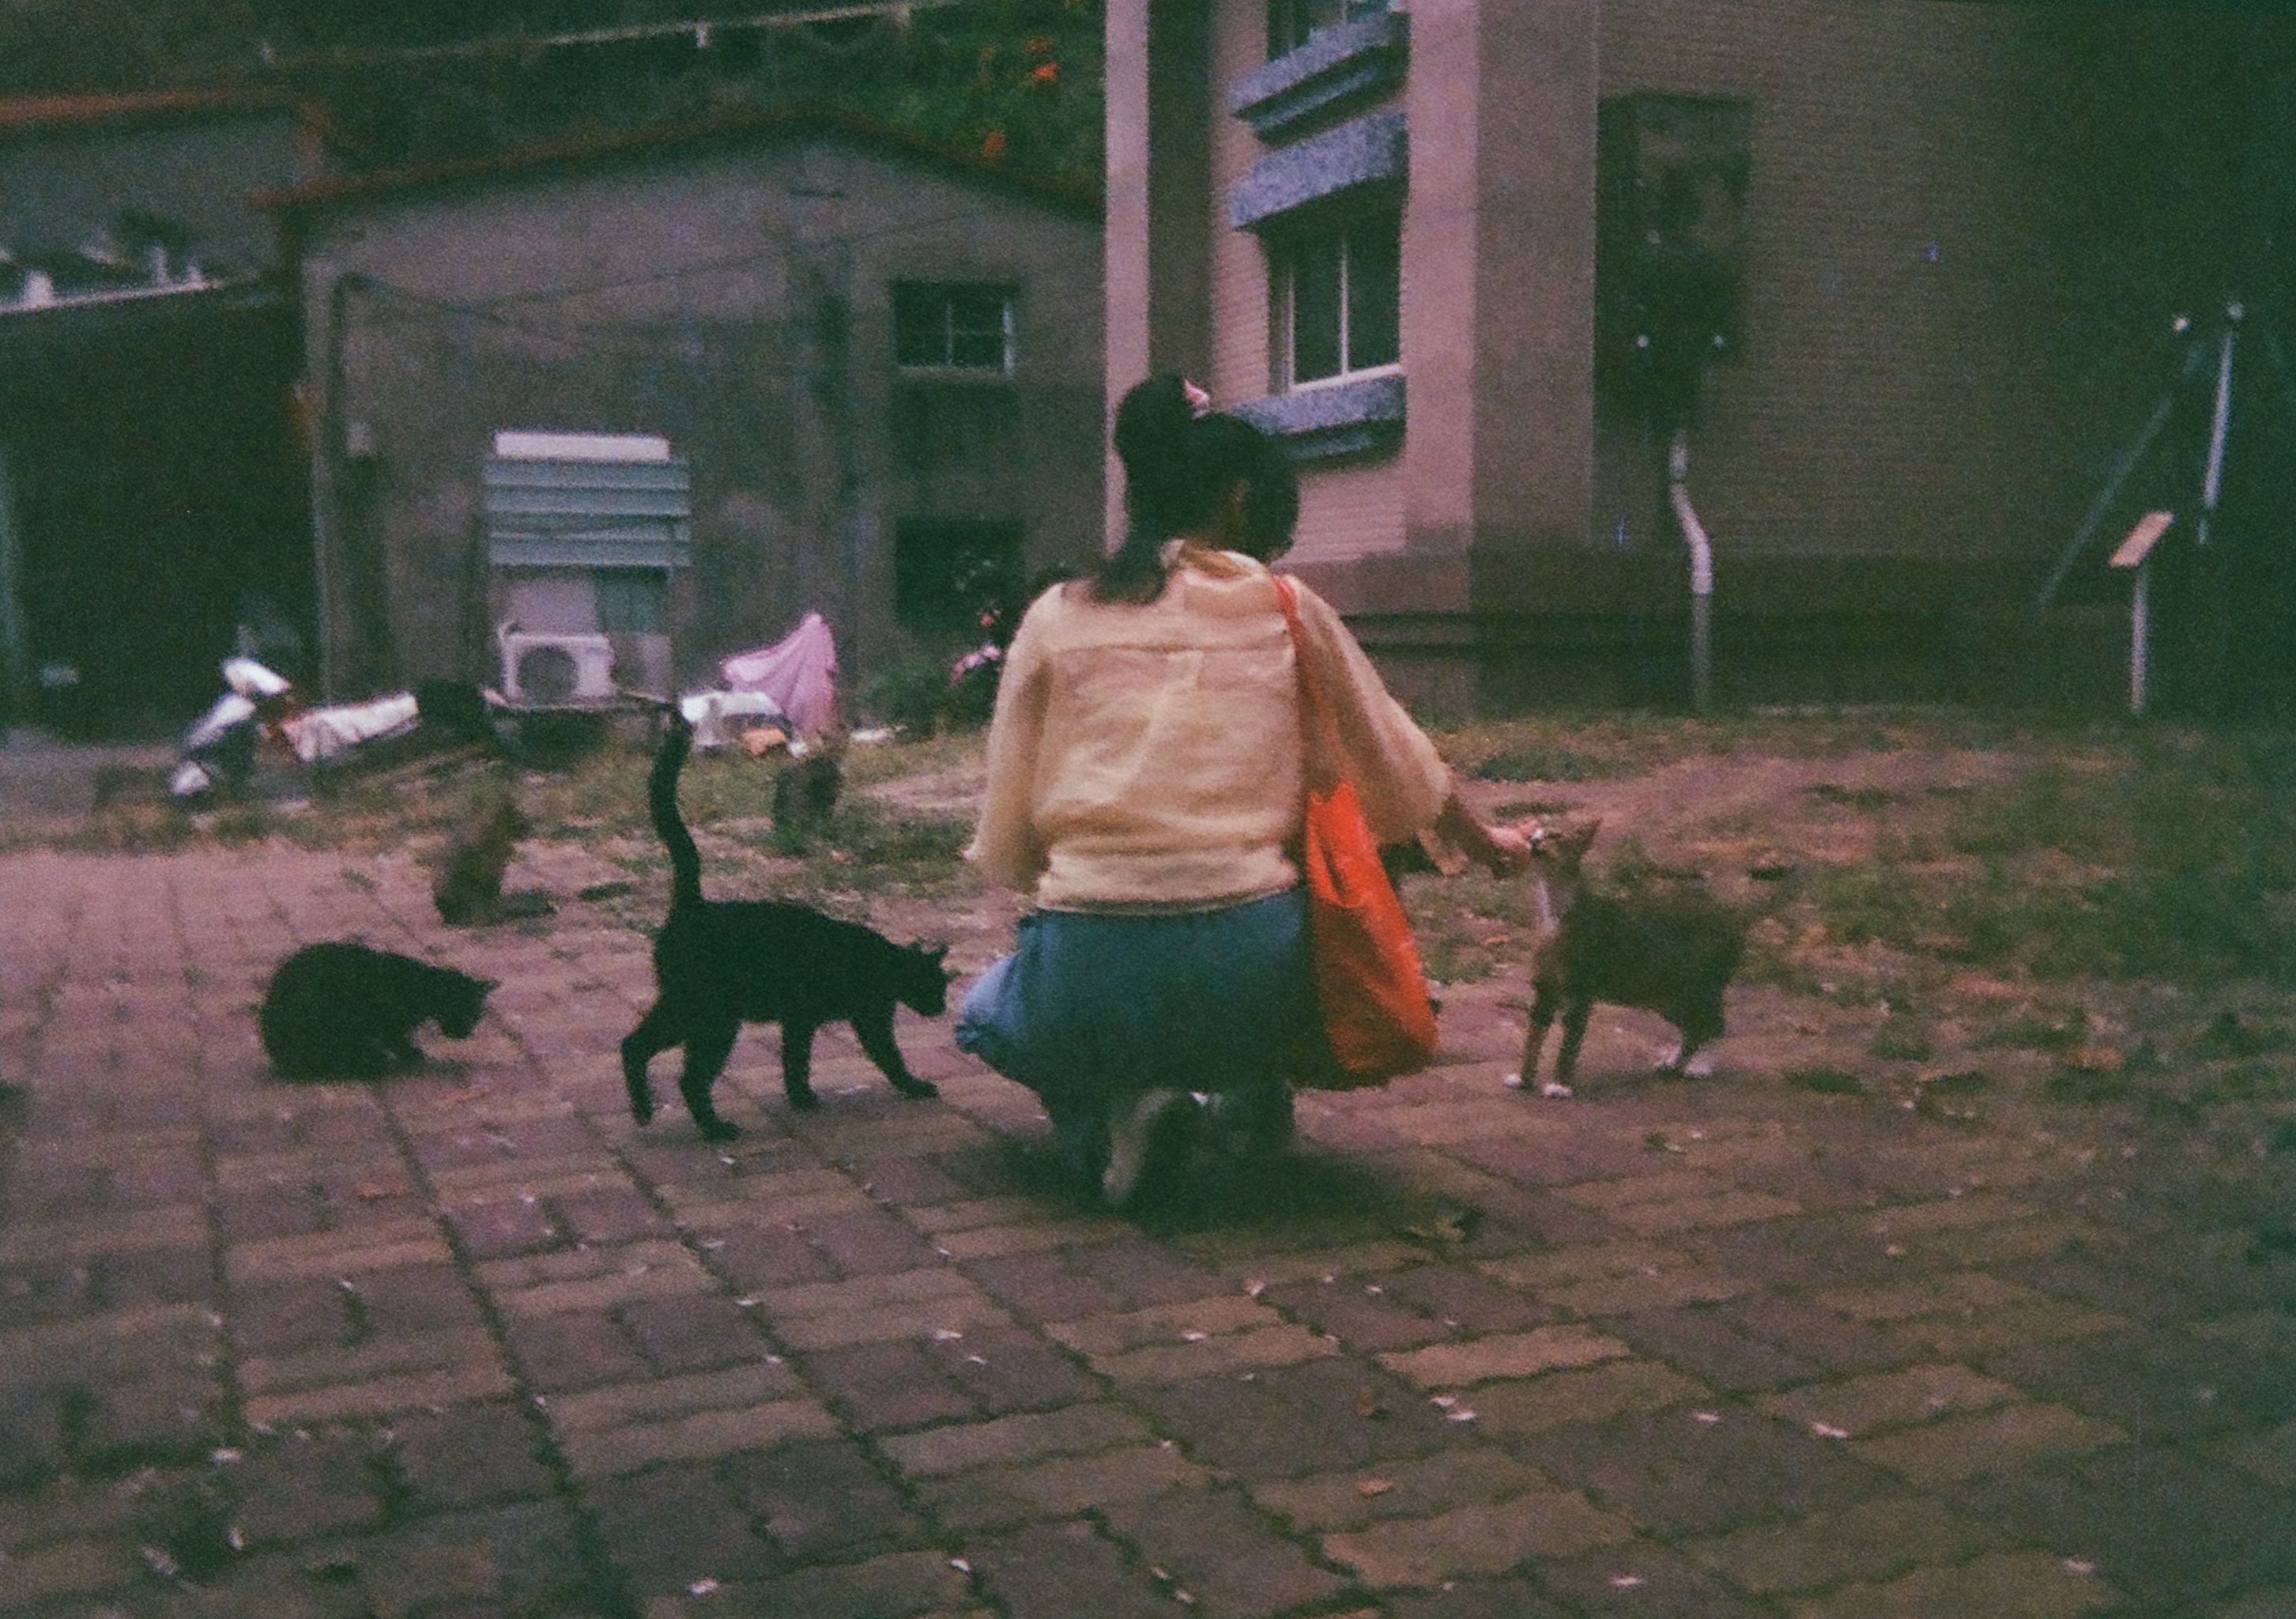 a person kneeling on a brick sidewalk feeding cats